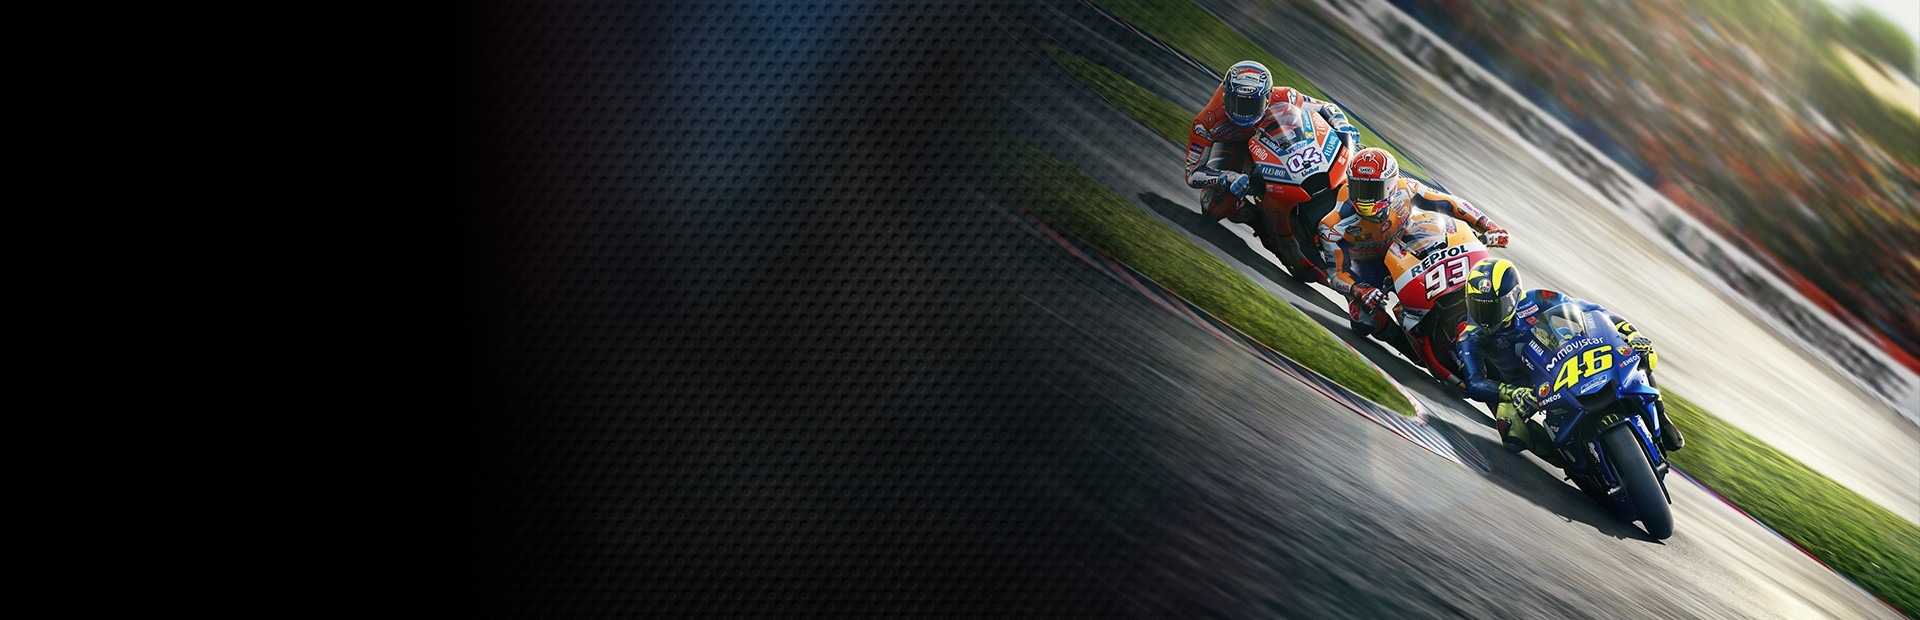 Banner MotoGP 18